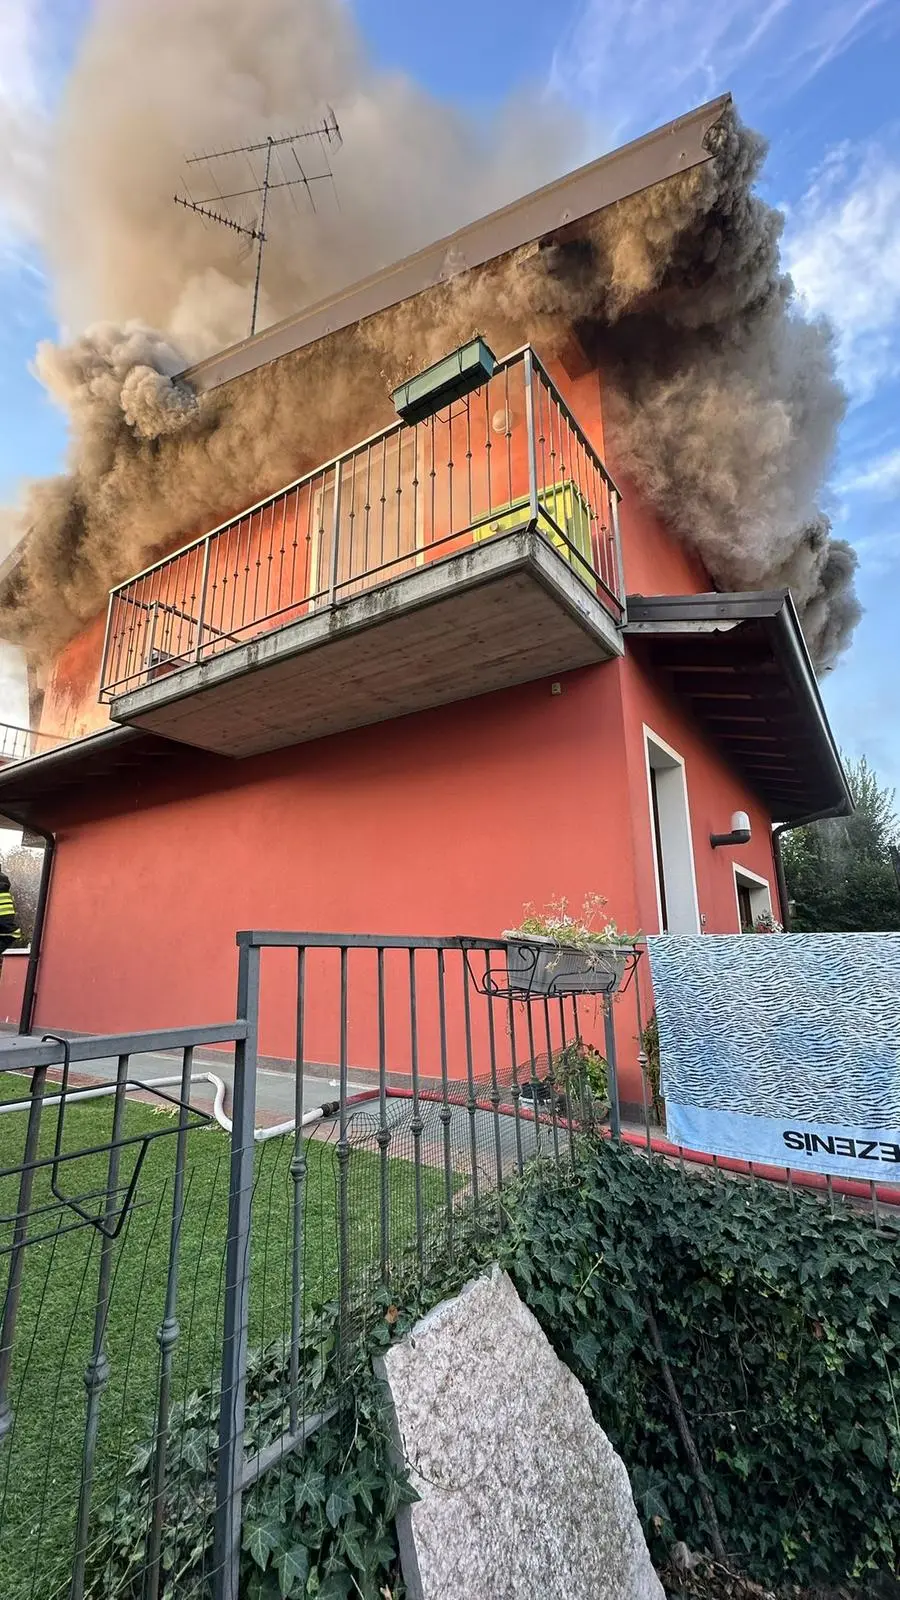 Villetta in fiamme a Pozzolengo